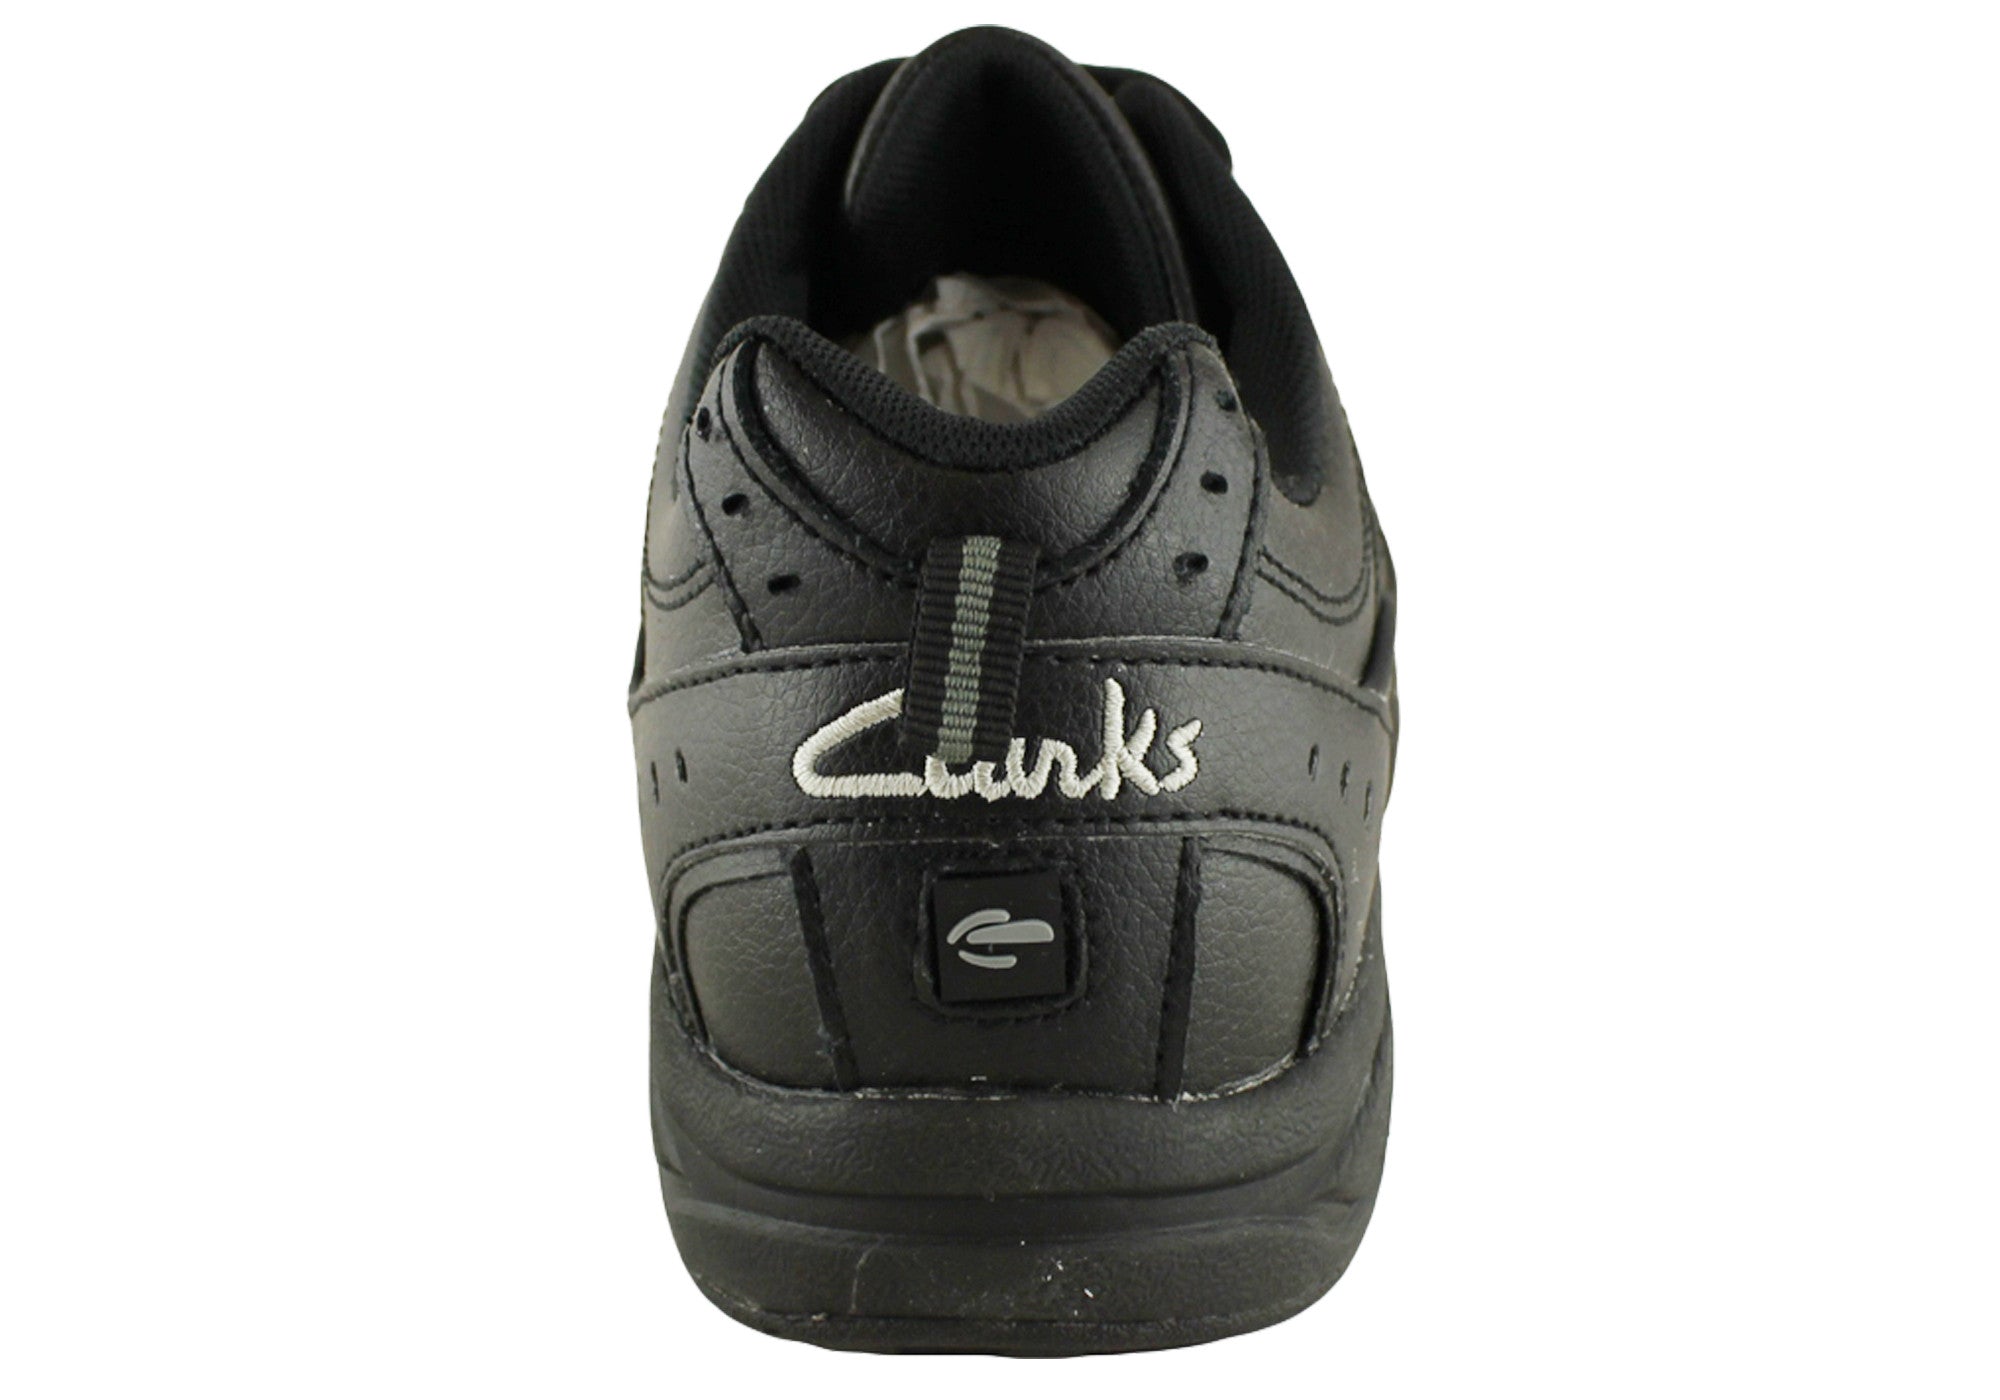 clarks sportswear shoes